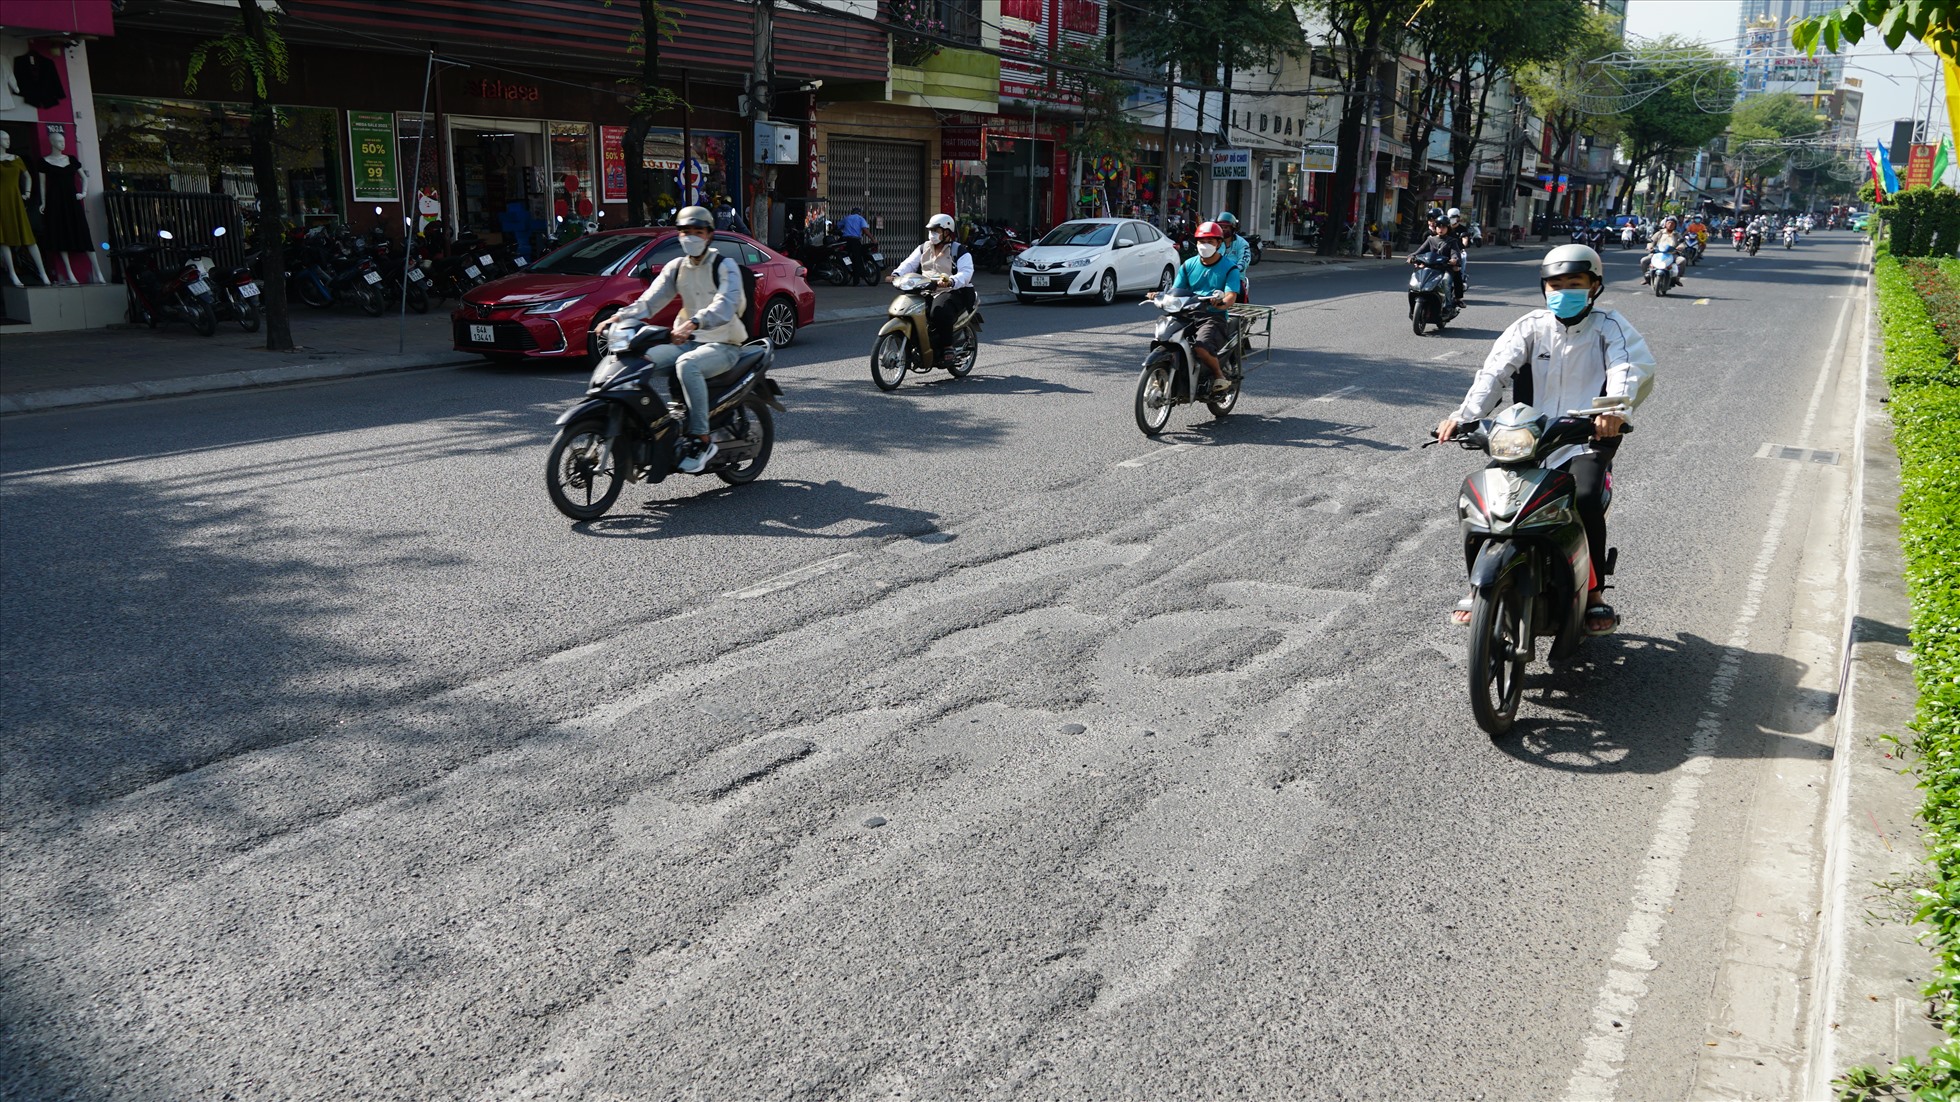 Ghi nhận của Lao Động, nhiều tuyến đường, phố thuộc nội ô TP. Cần Thơ vẫn còn tình trạng ổ gà, rãnh đường làm ảnh hưởng đến việc lưu thông của người dân.